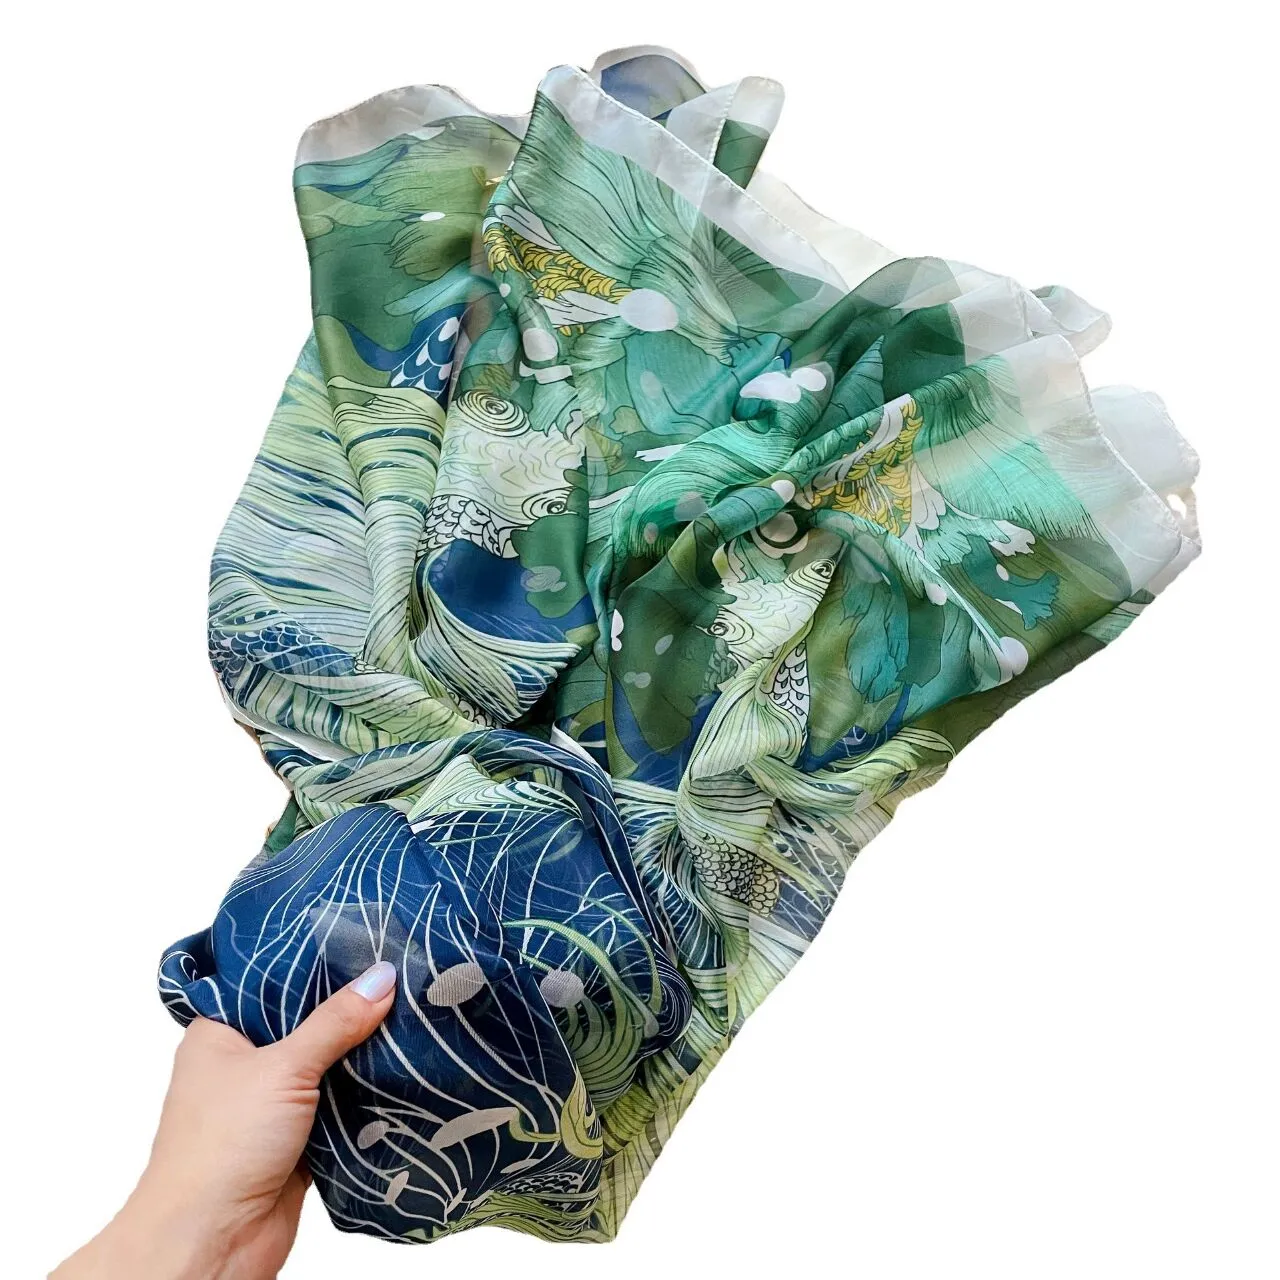 130-180cmシフォンスカーフ女性シニアレイヤーショールズファッション観光ソフトデザイナーラグジュアリーギフト印刷スカーフ